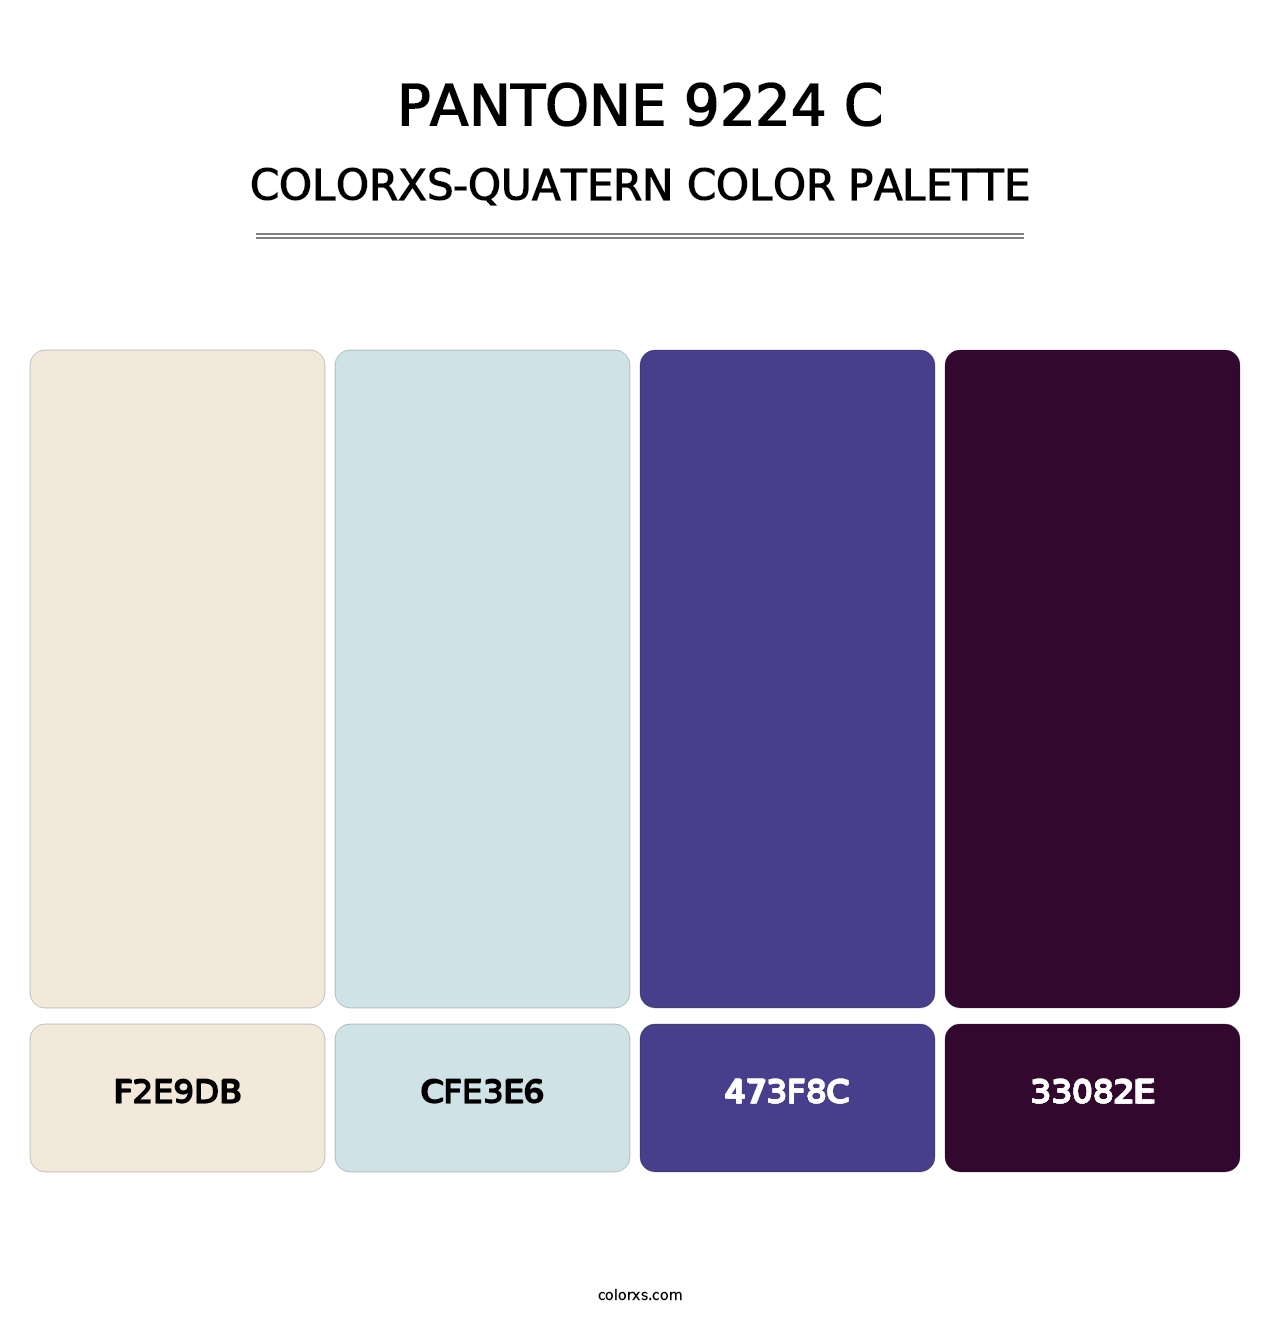 PANTONE 9224 C - Colorxs Quatern Palette